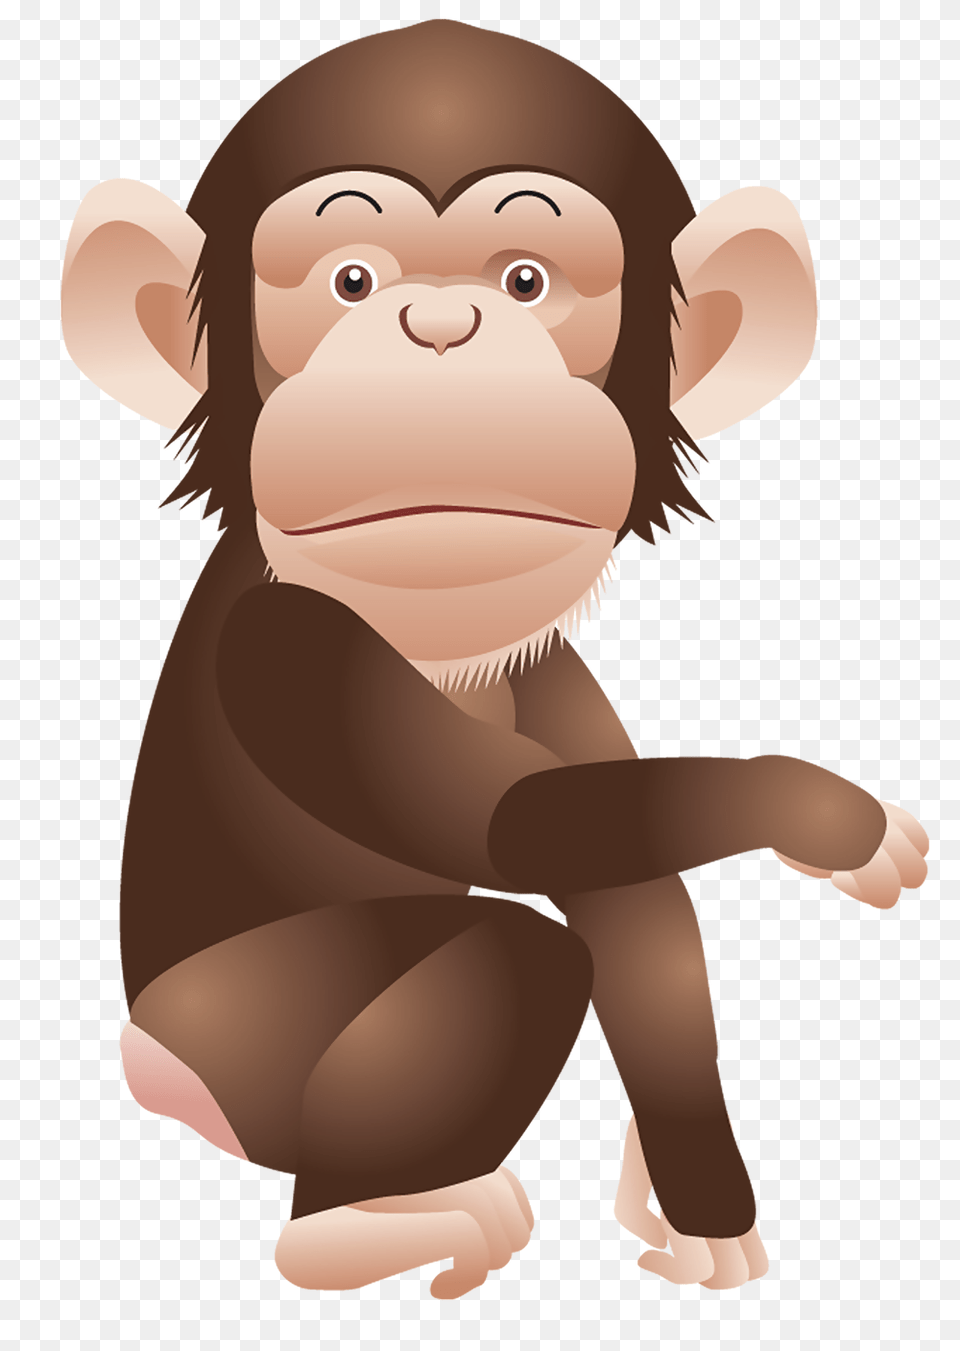 Monkey, Animal, Ape, Mammal, Wildlife Png Image